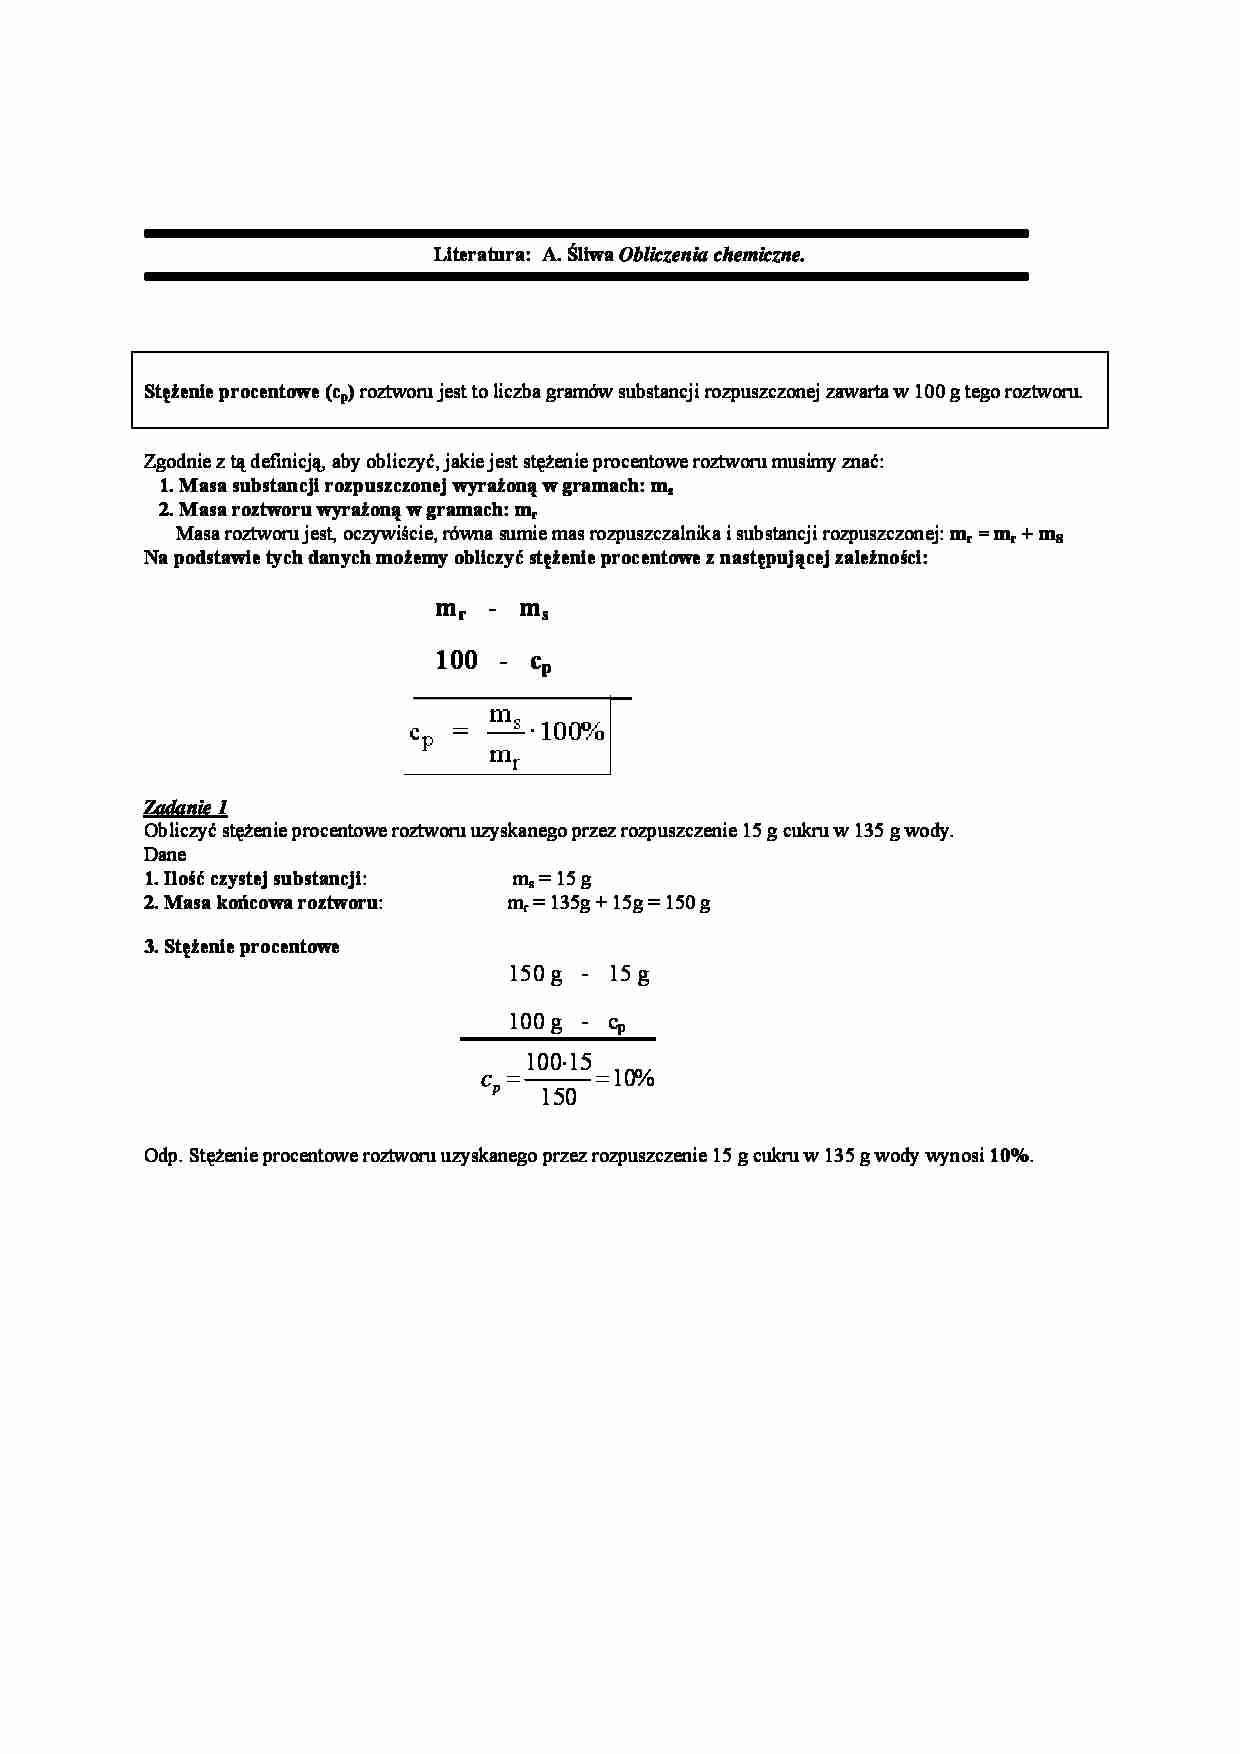 Stężenie procentowe - chemia analityczna - strona 1